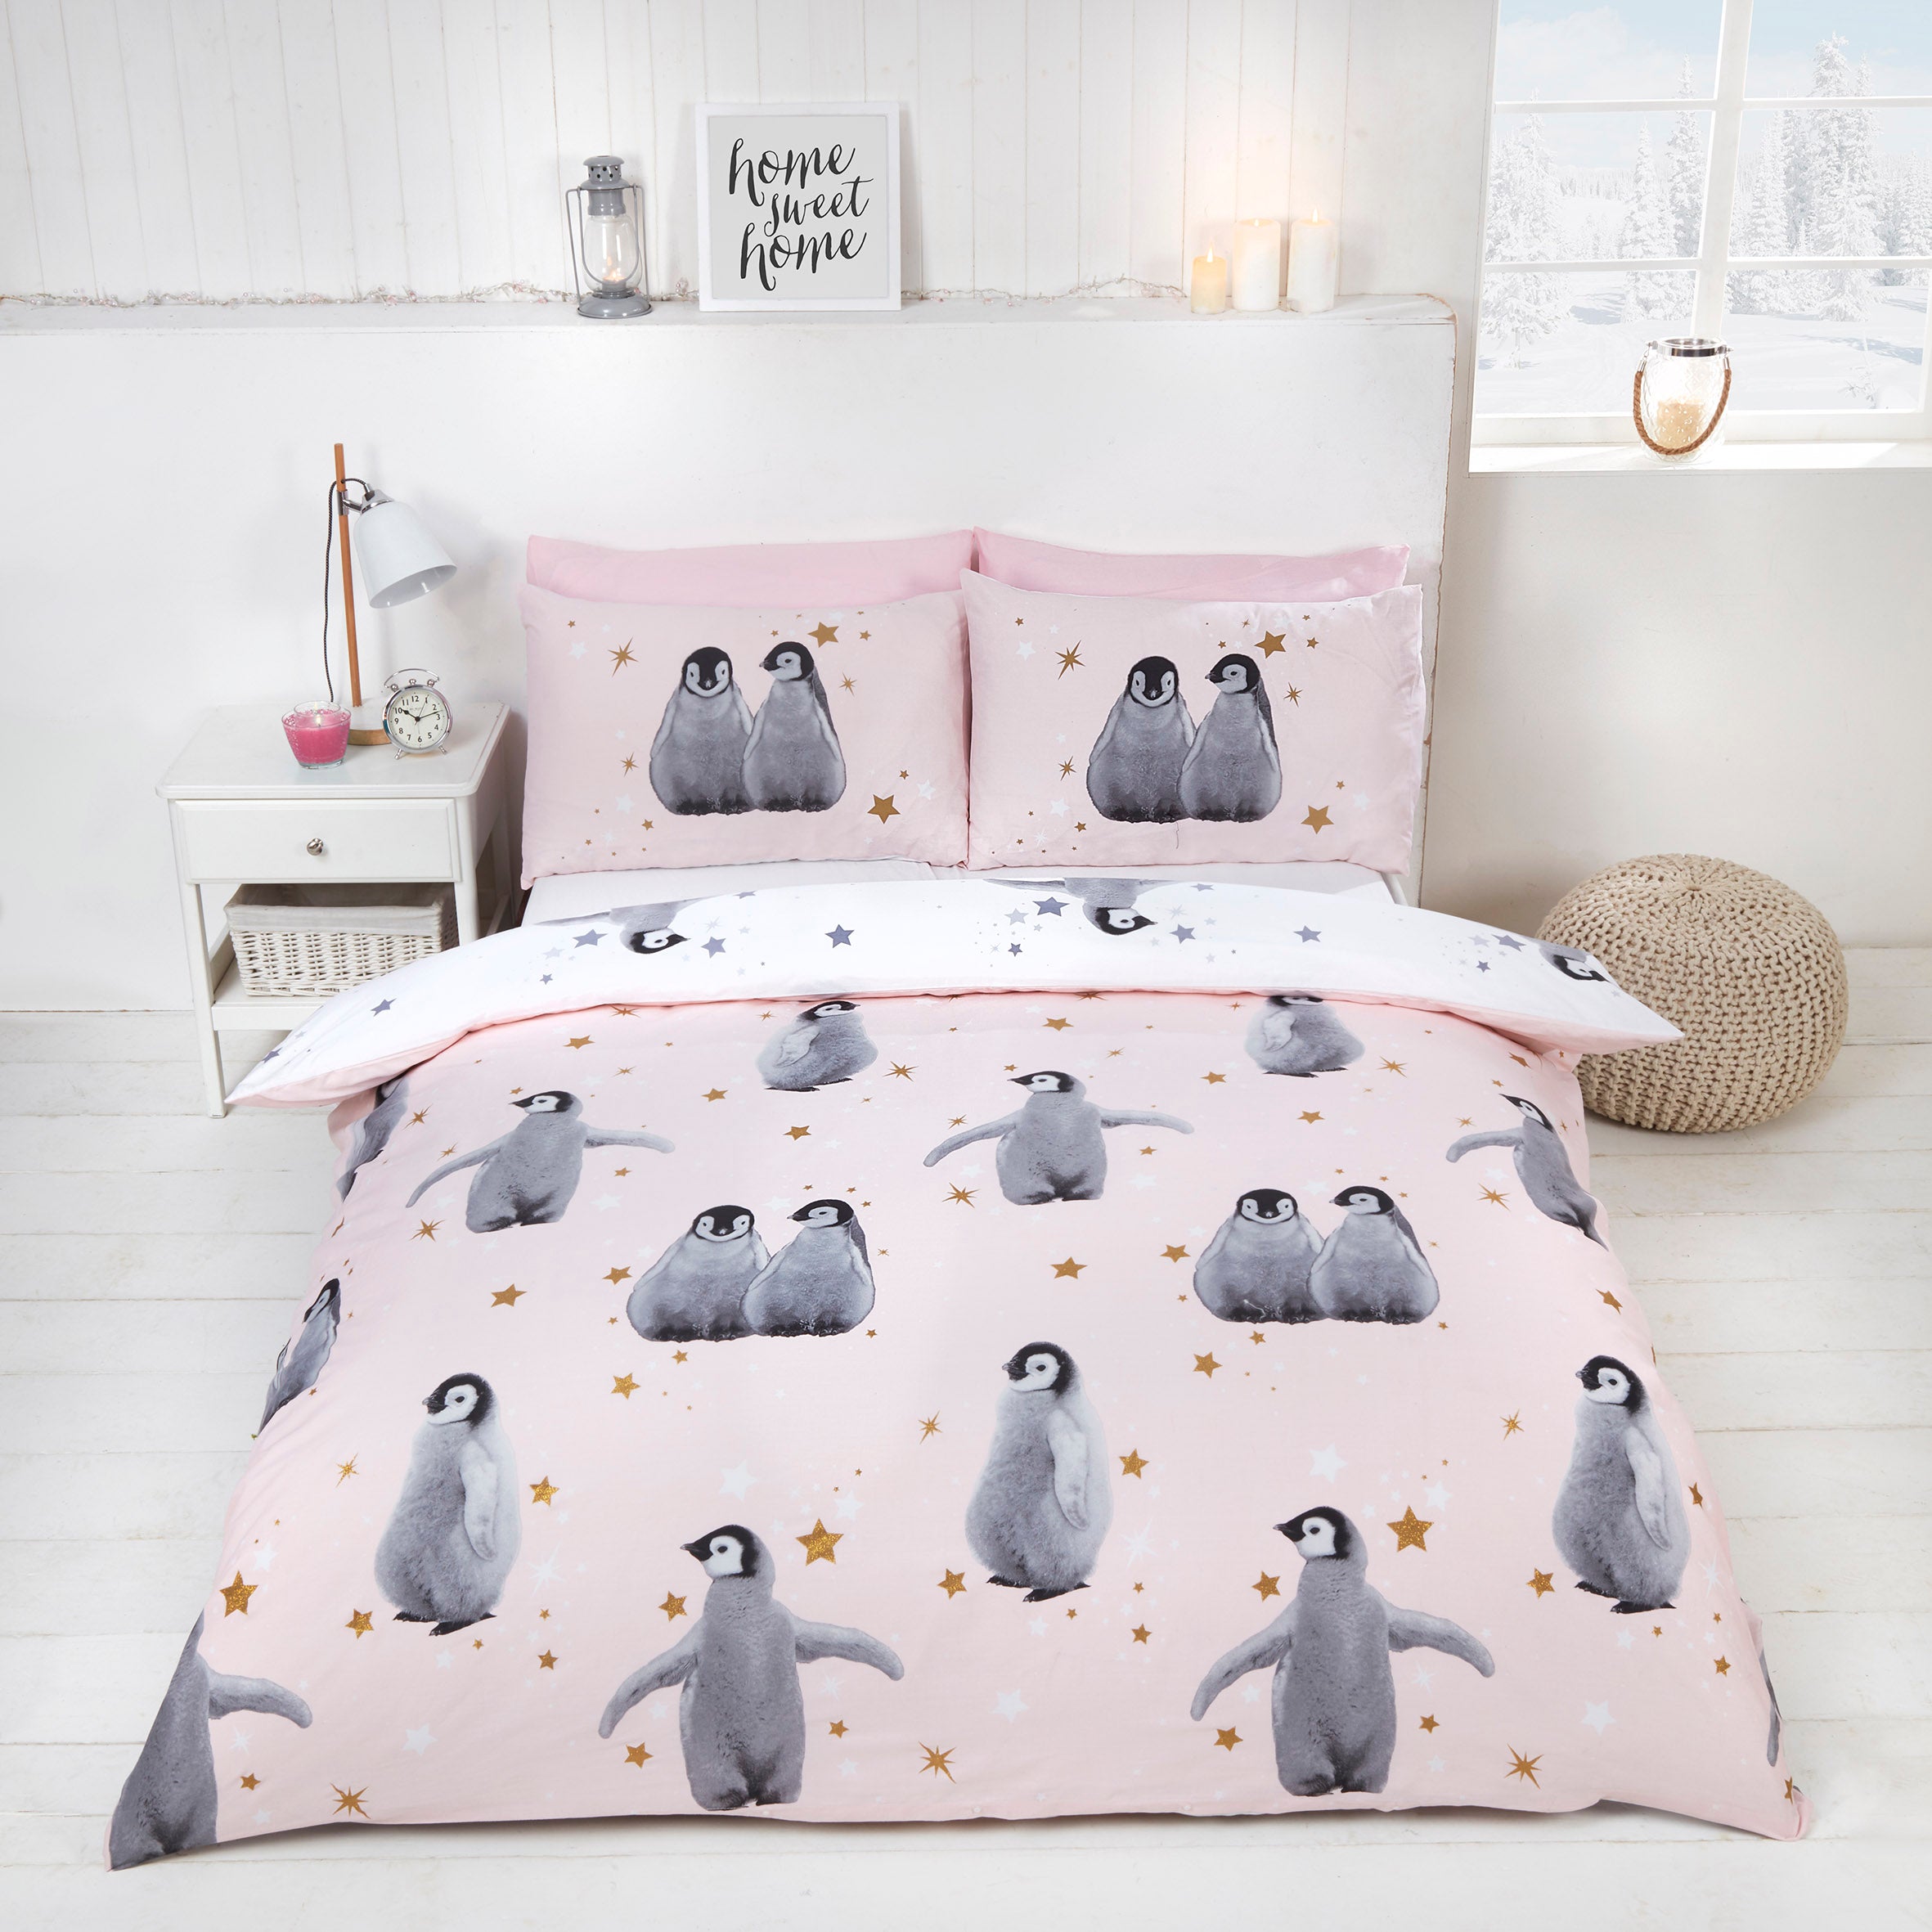 Rapport Home Starry Penguins Duvet Cover sets